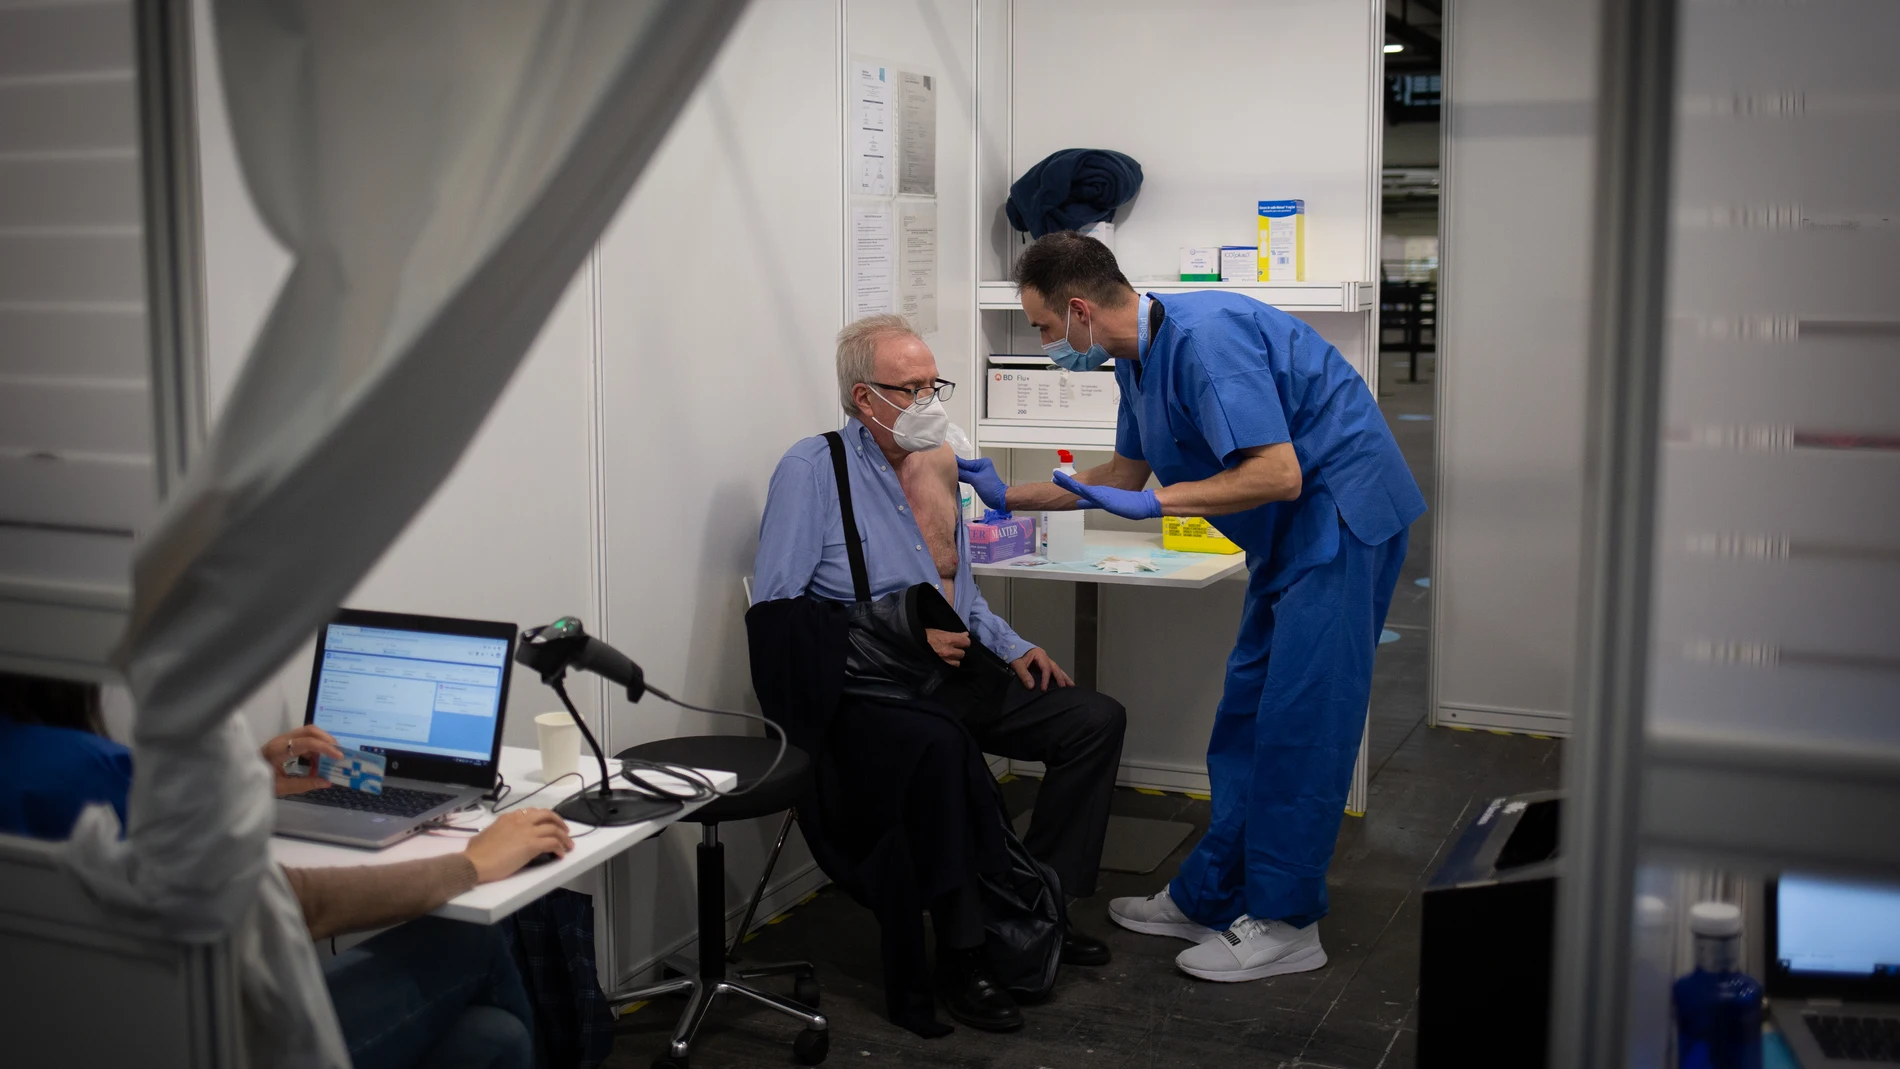 Una sanitaria vacuna a un hombre en el circuito de vacunación de Fira de Barcelona, una prueba piloto para futuras inoculaciones a gran escala cuando lleguen más dosis